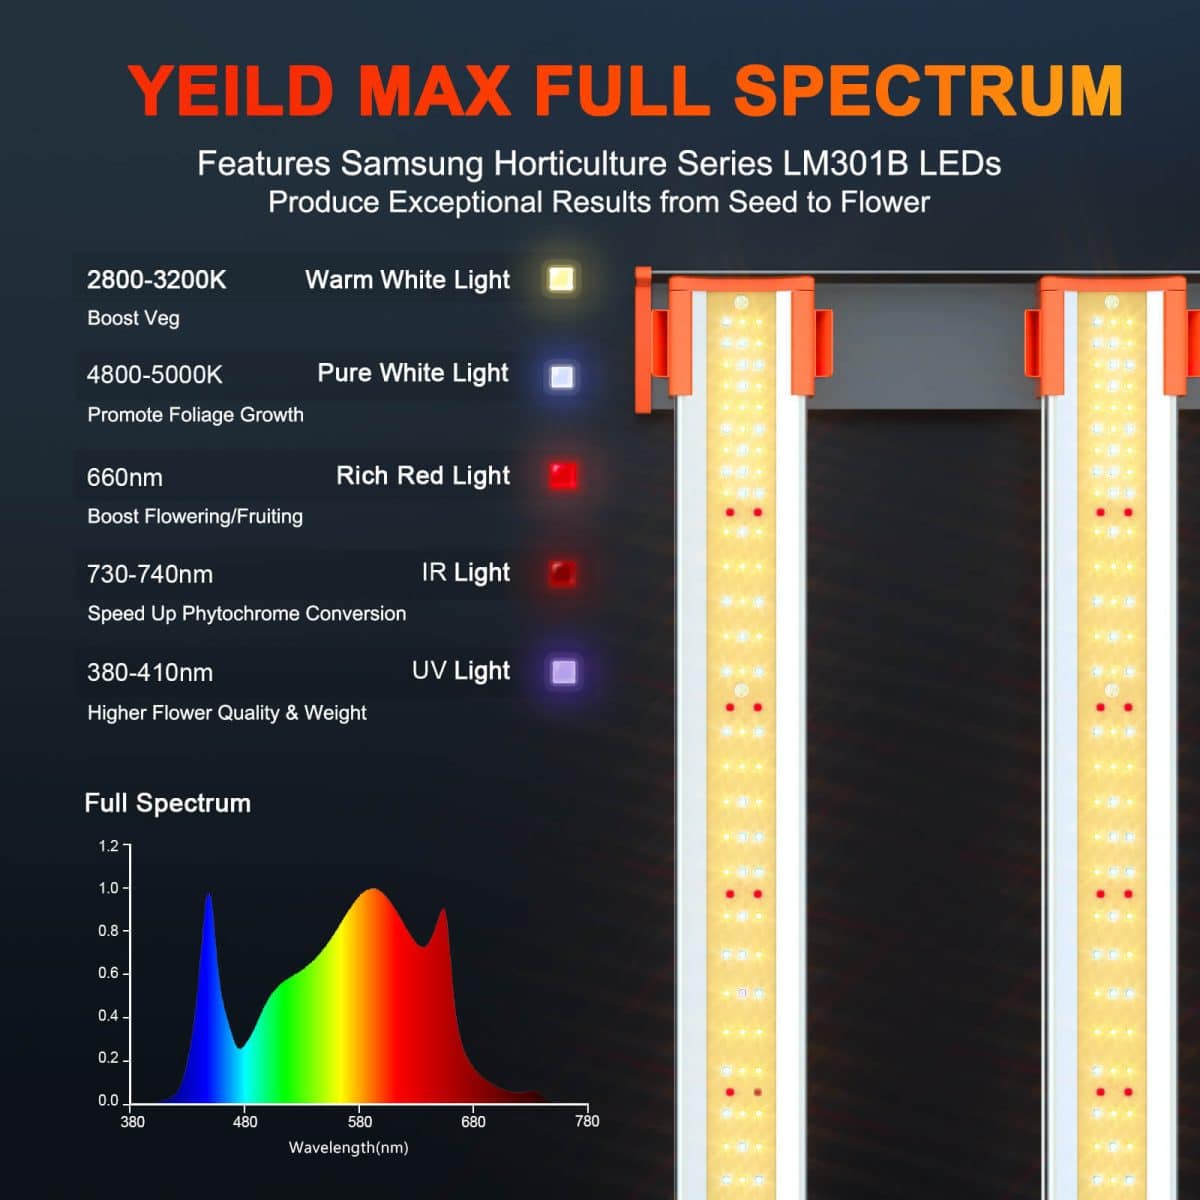 Yeild max full spectrum